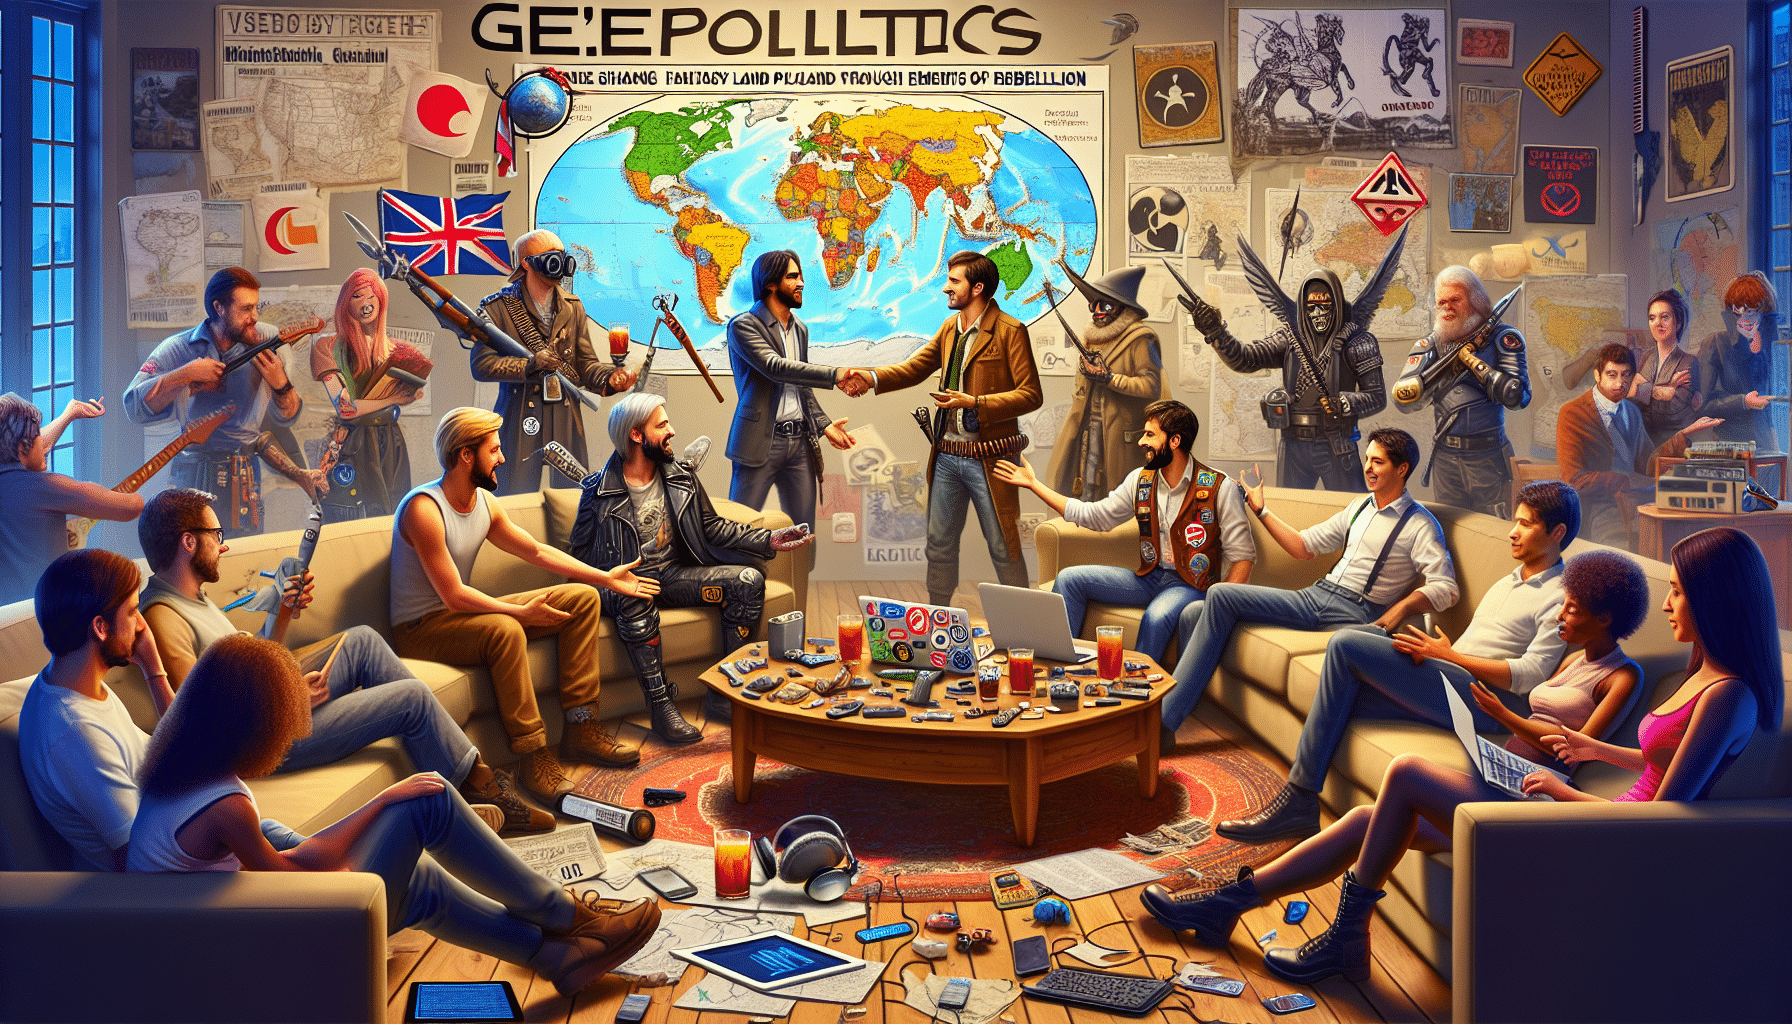 la geopolítica 'geek' - rebelión